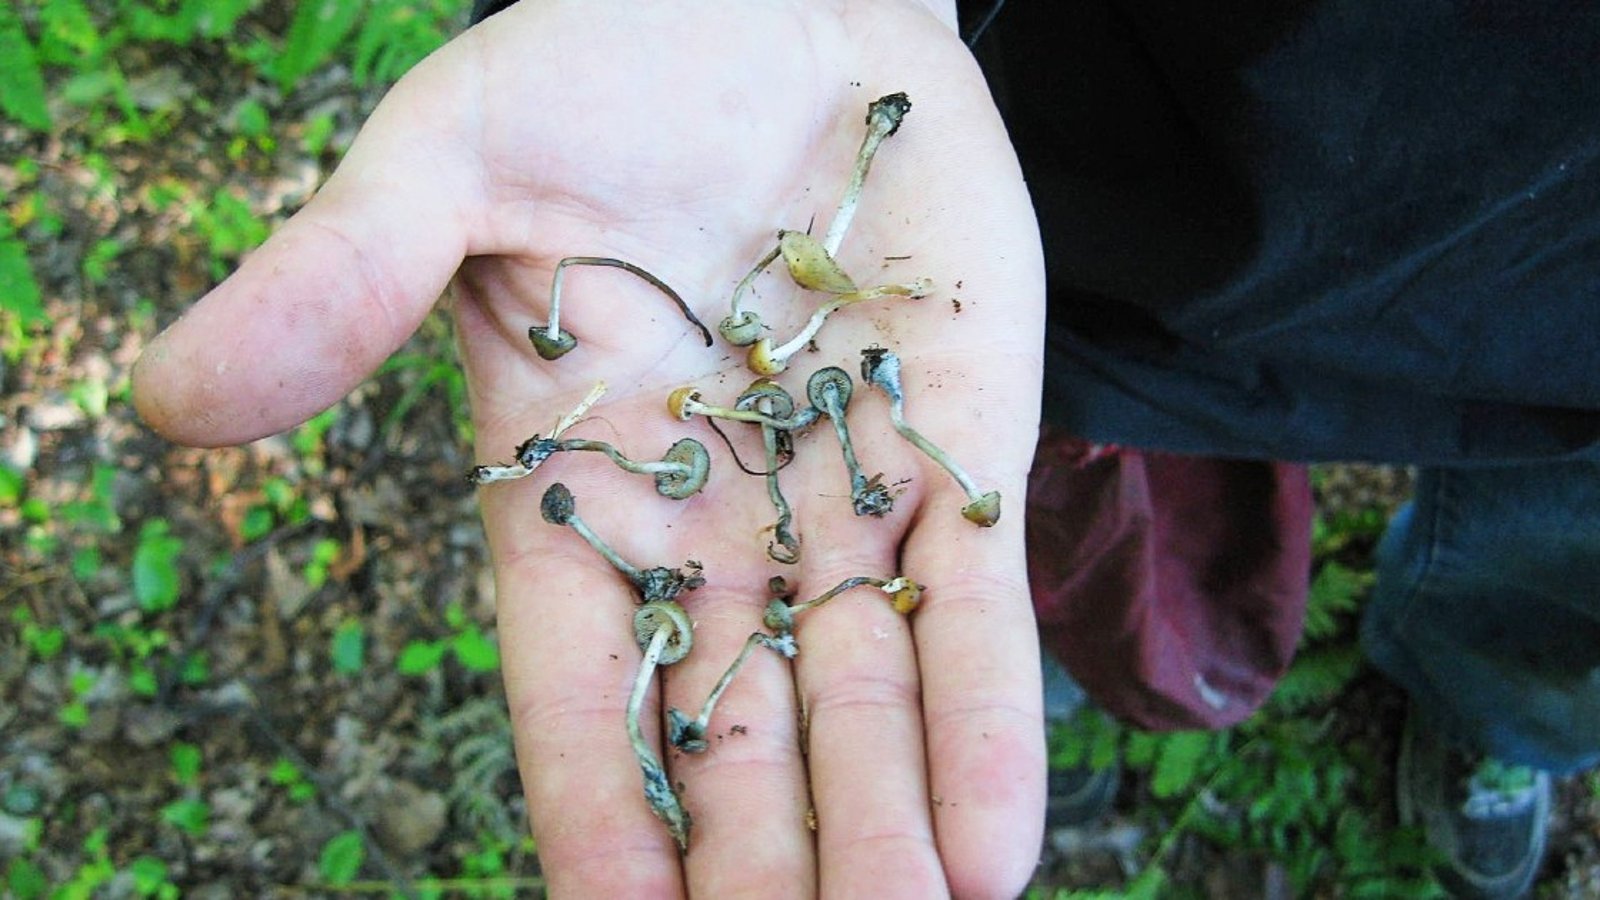 Des champignons hallucinogènes pourraient se trouver dans un boisé près de chez vous